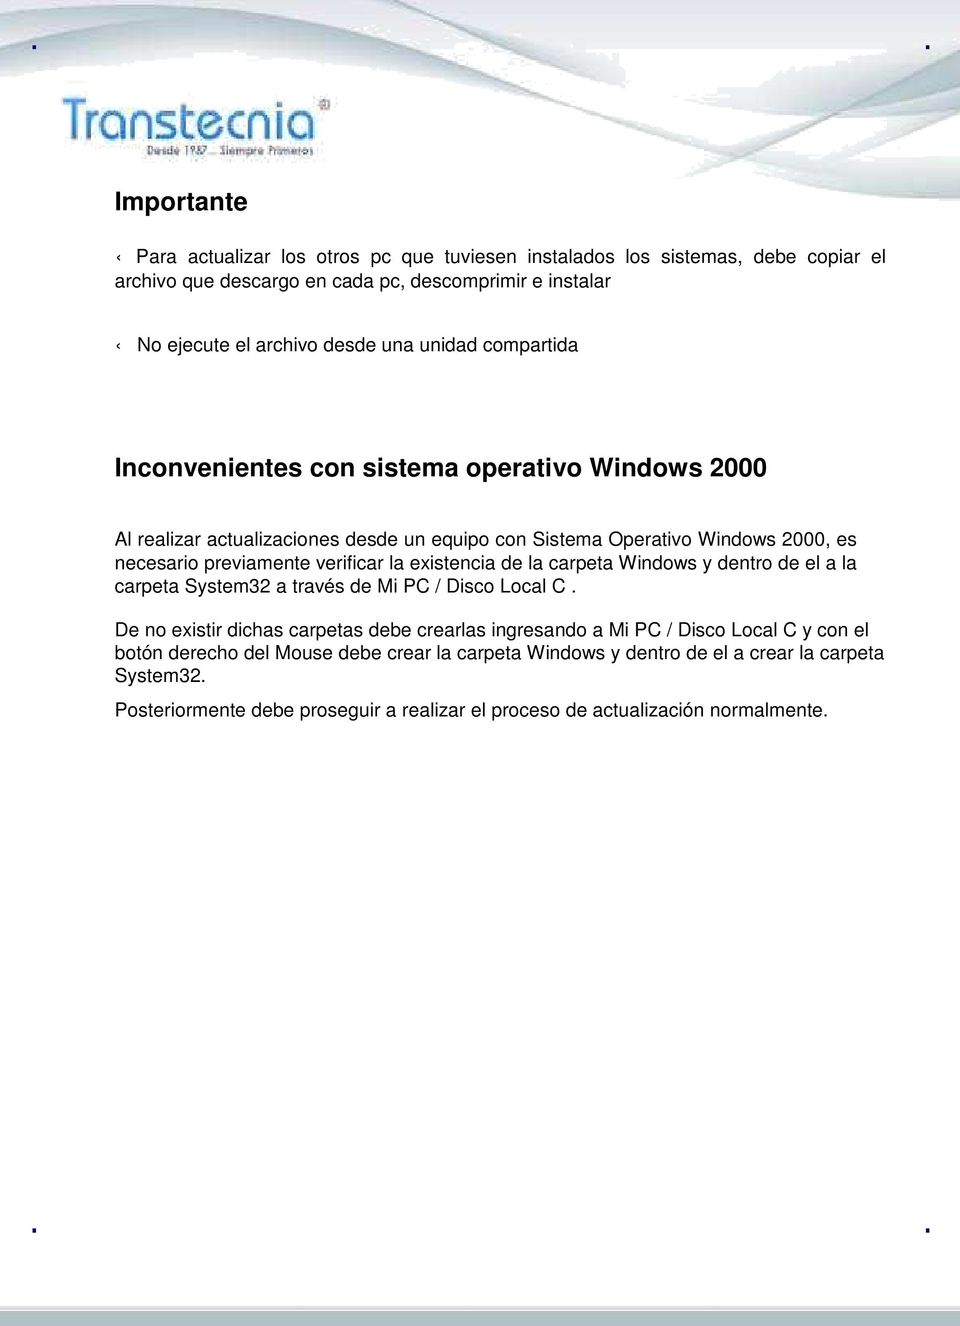 la existencia de la carpeta Windows y dentro de el a la carpeta System32 a través de Mi PC / Disco Local C.